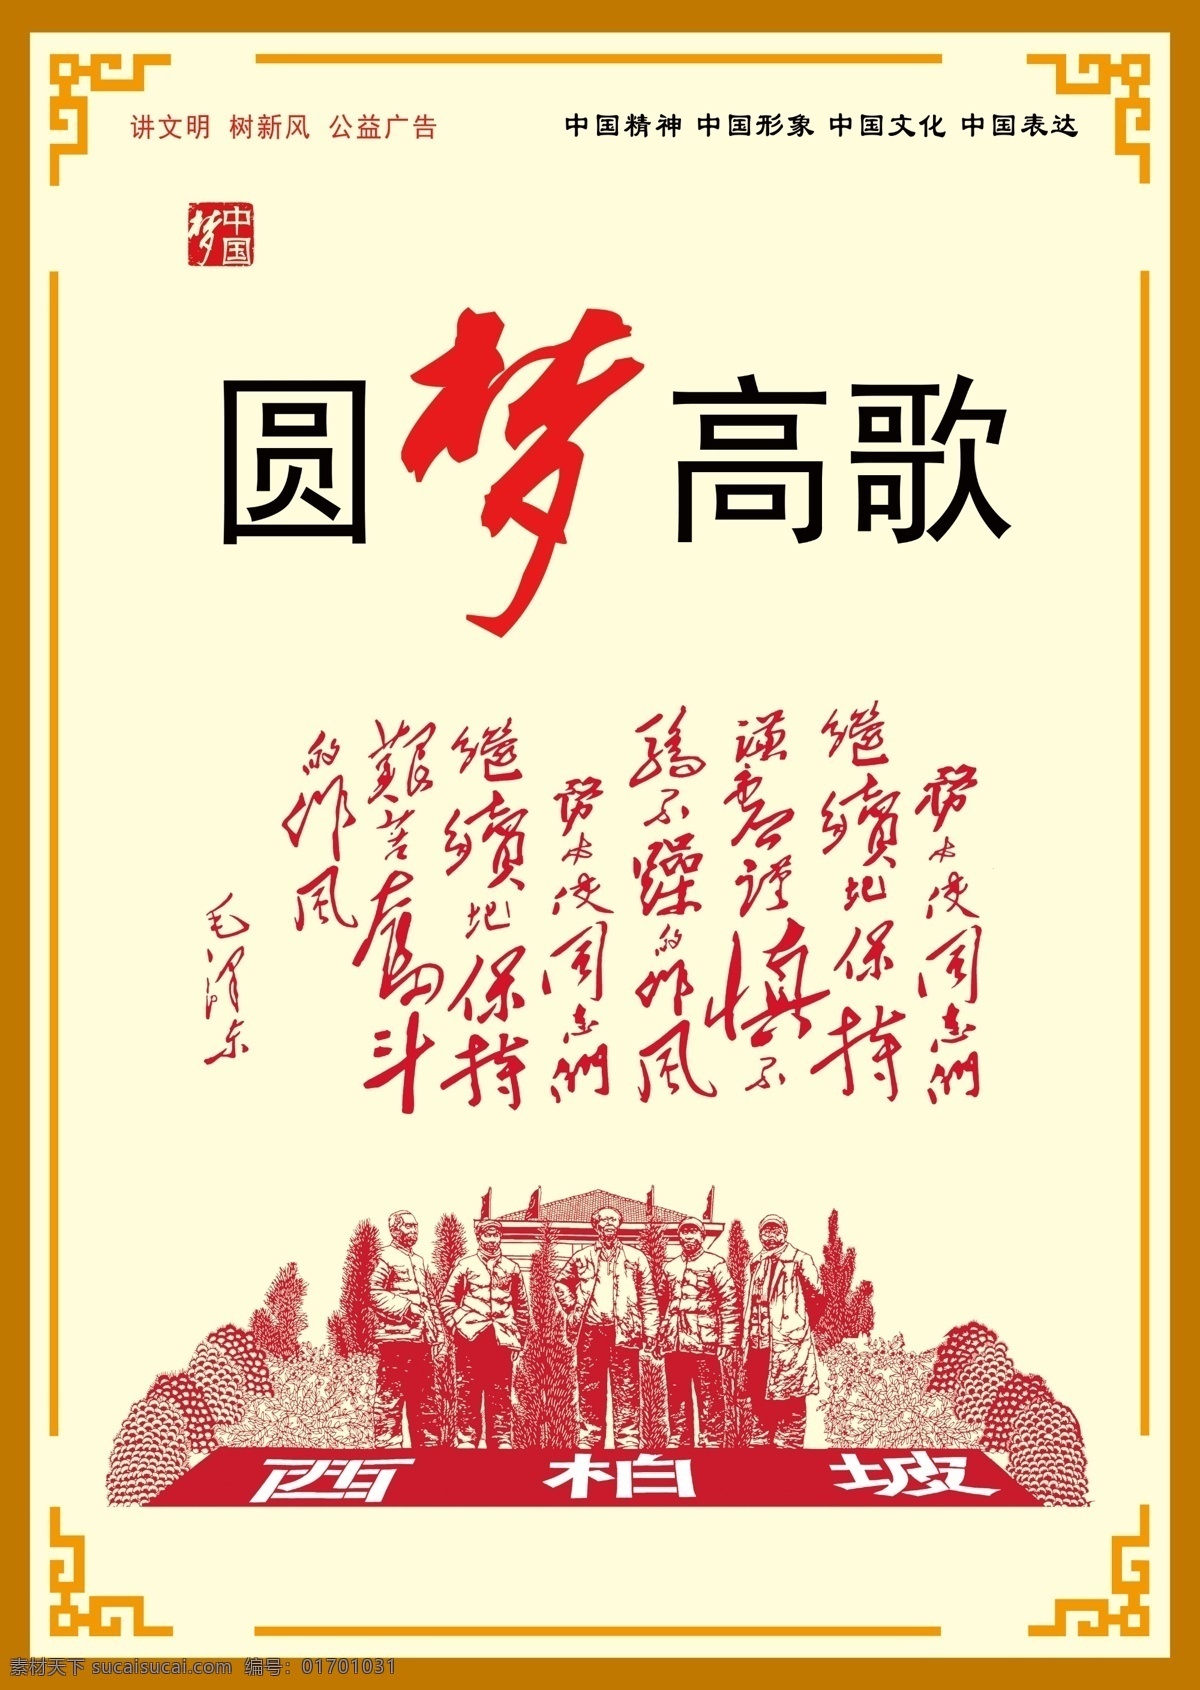 圆梦高歌 讲文明树新风 中国梦 中国文化 红色经典 西柏坡 社会主义 核心价值观 海报